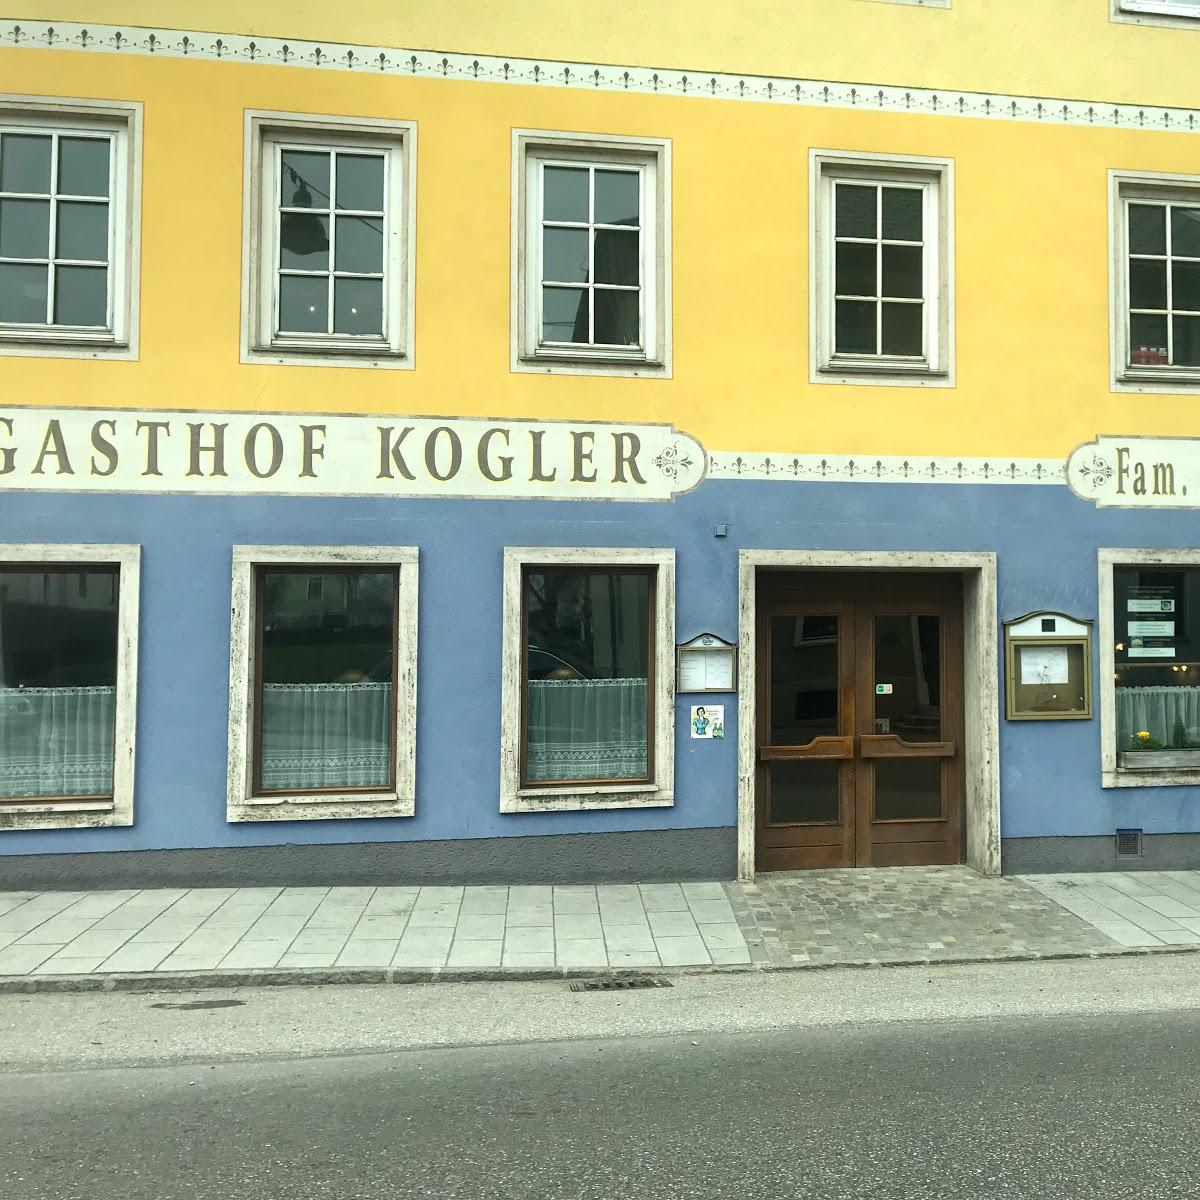 Restaurant "Gasthof Kogler" in Frankenmarkt